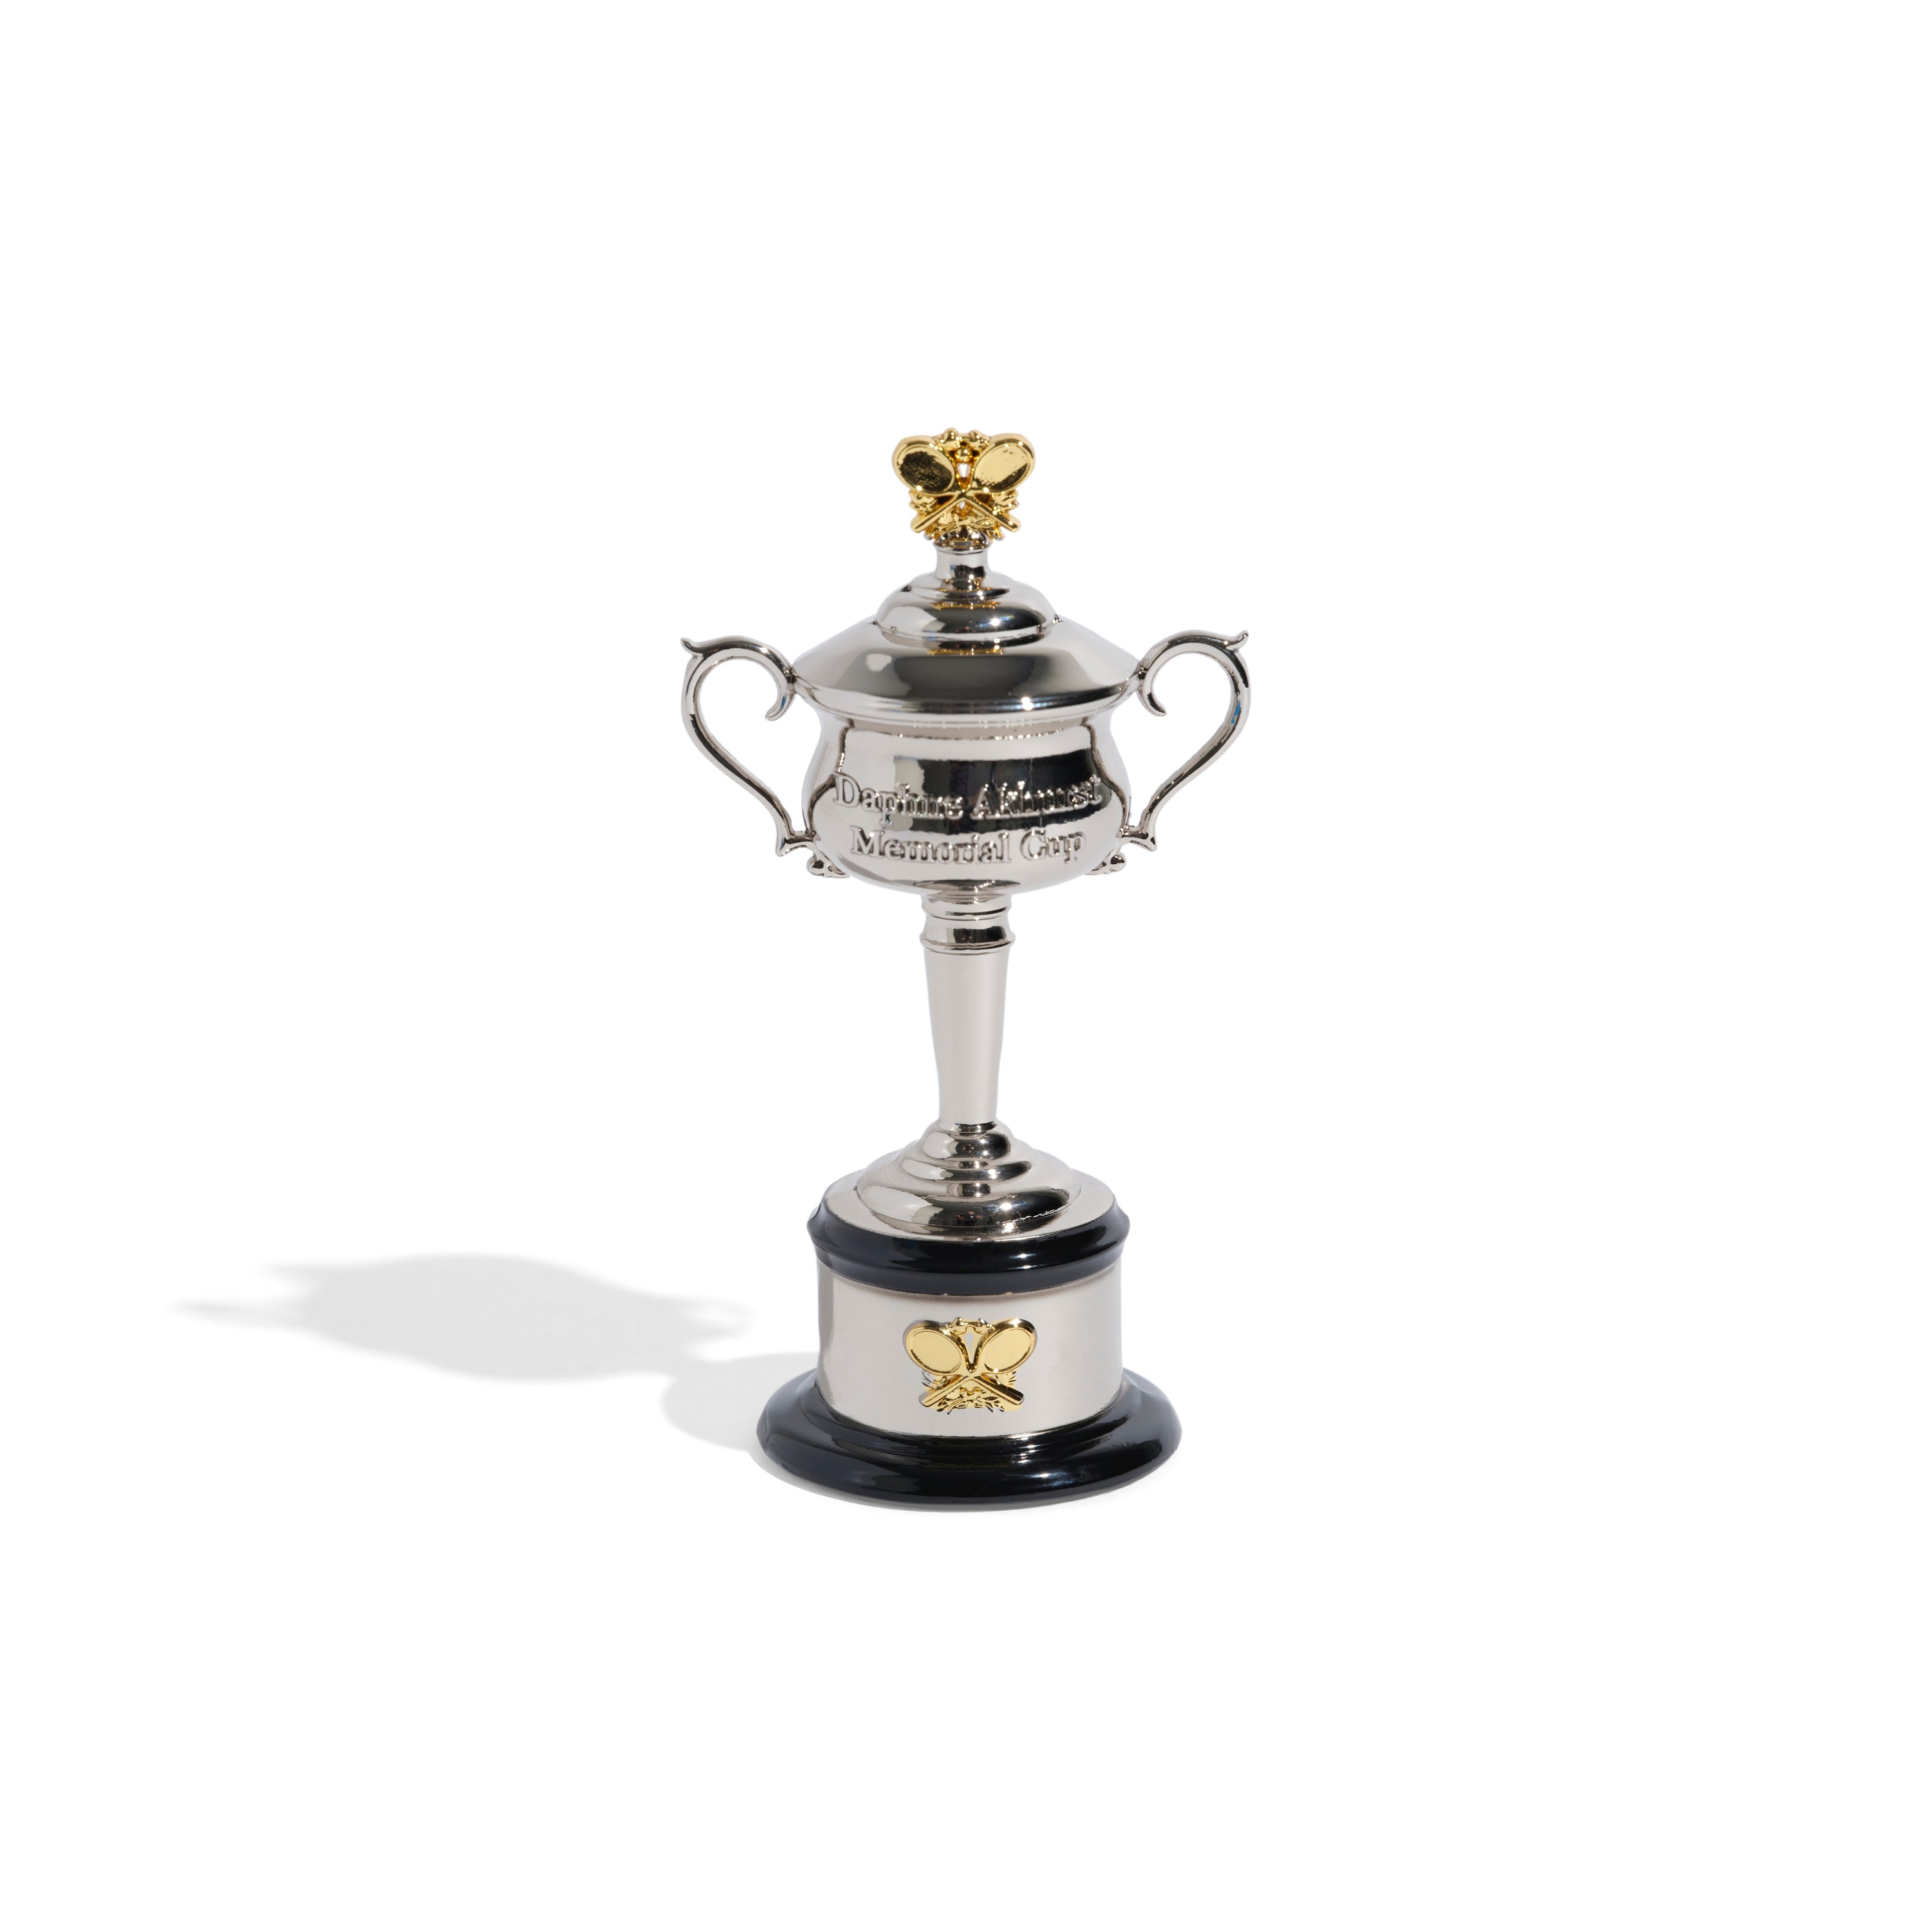 Miniature Women's Trophy